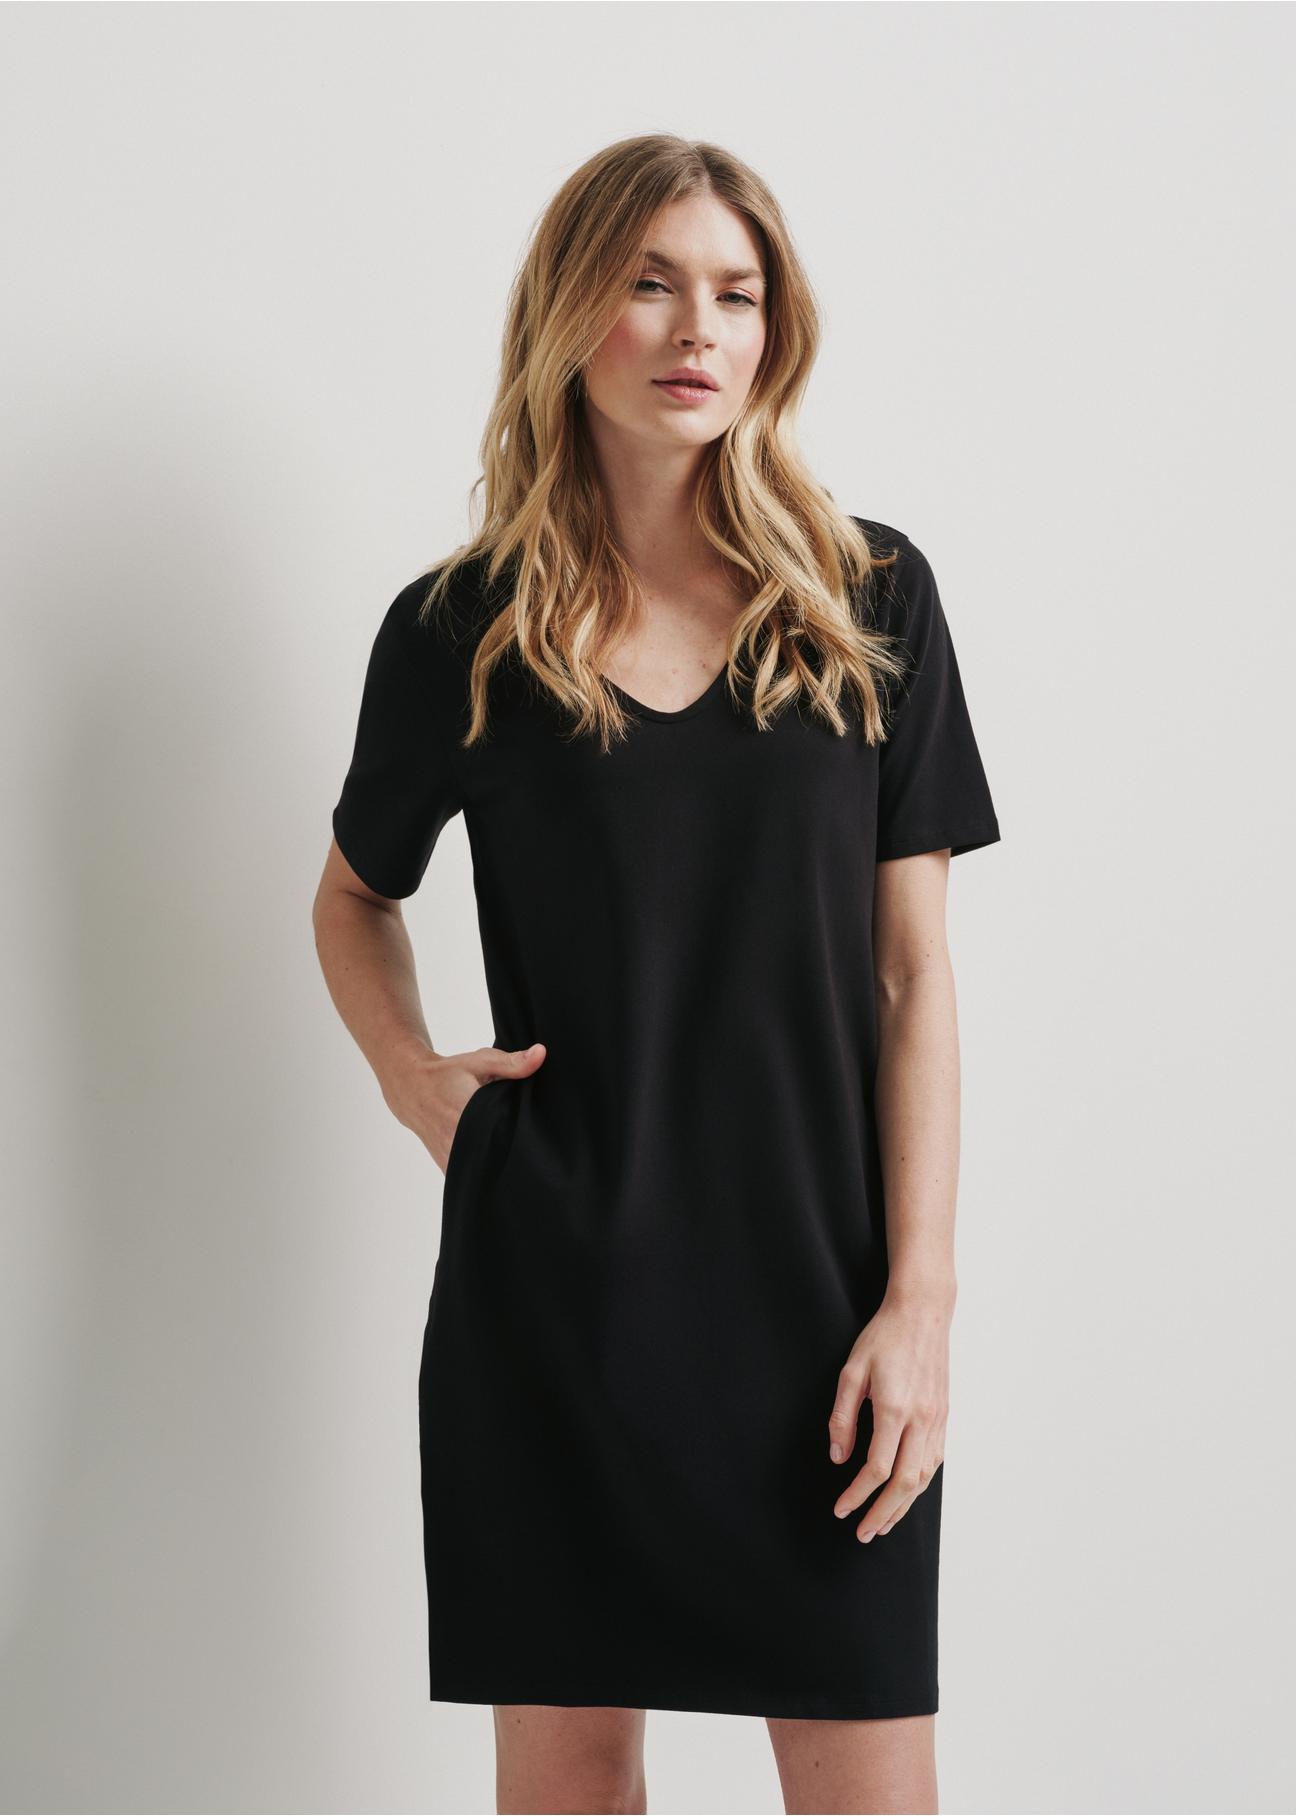 Krótka bawełniana czarna sukienka SUKDT-0185-99(W24)